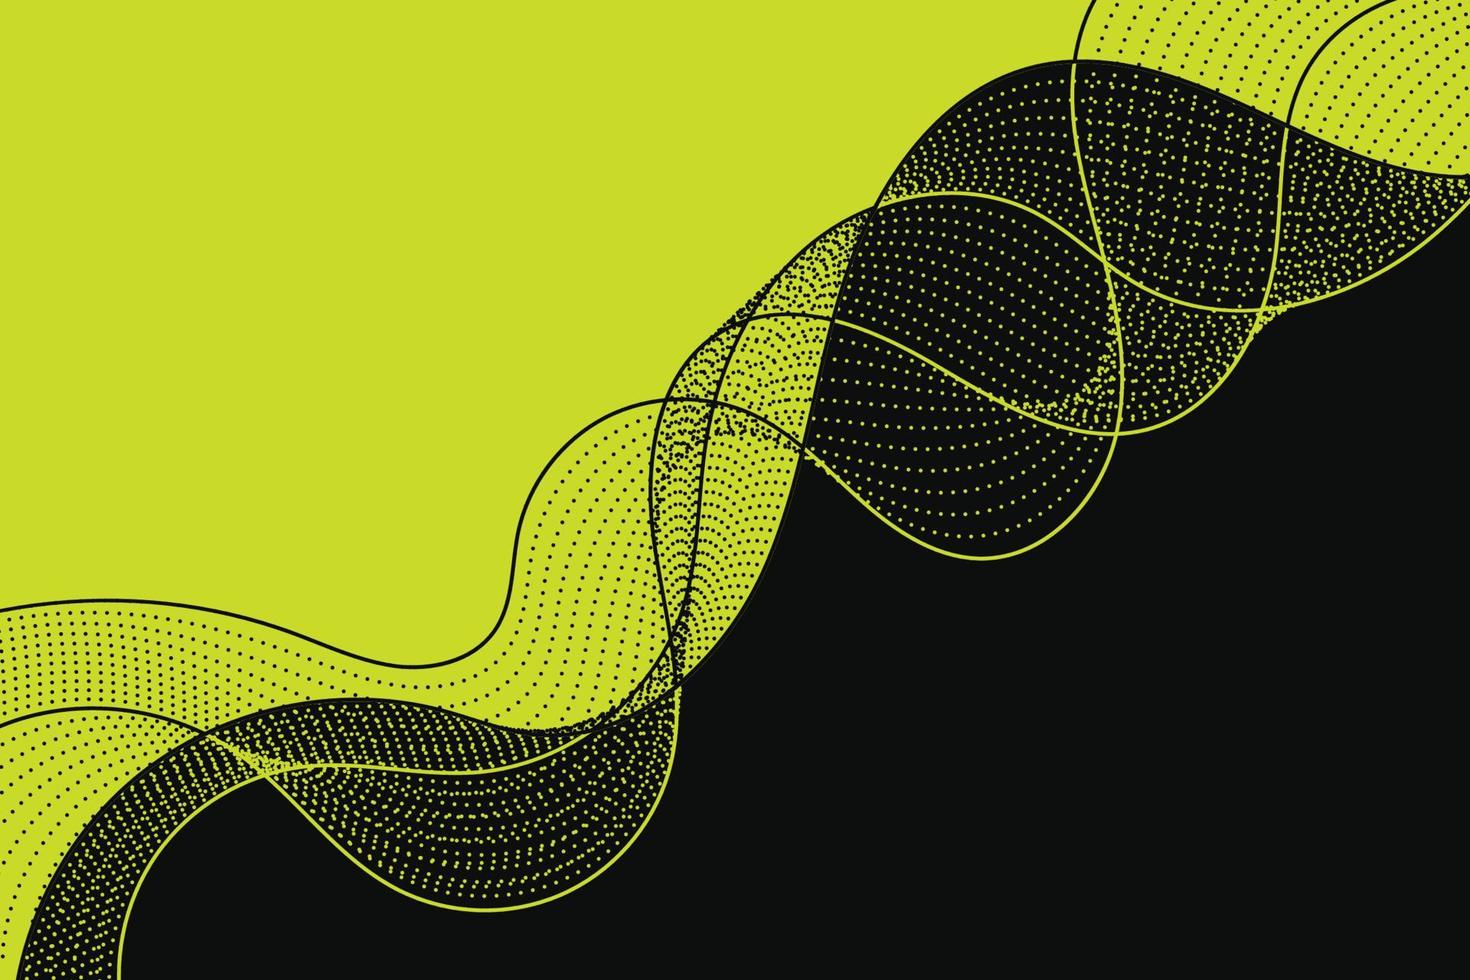 abstrakte komposition mit verdrehter gepunkteter welle in schwarzer und hellgrüner farbe. dynamisches gewelltes Hintergrunddesign des Wirbels vektor